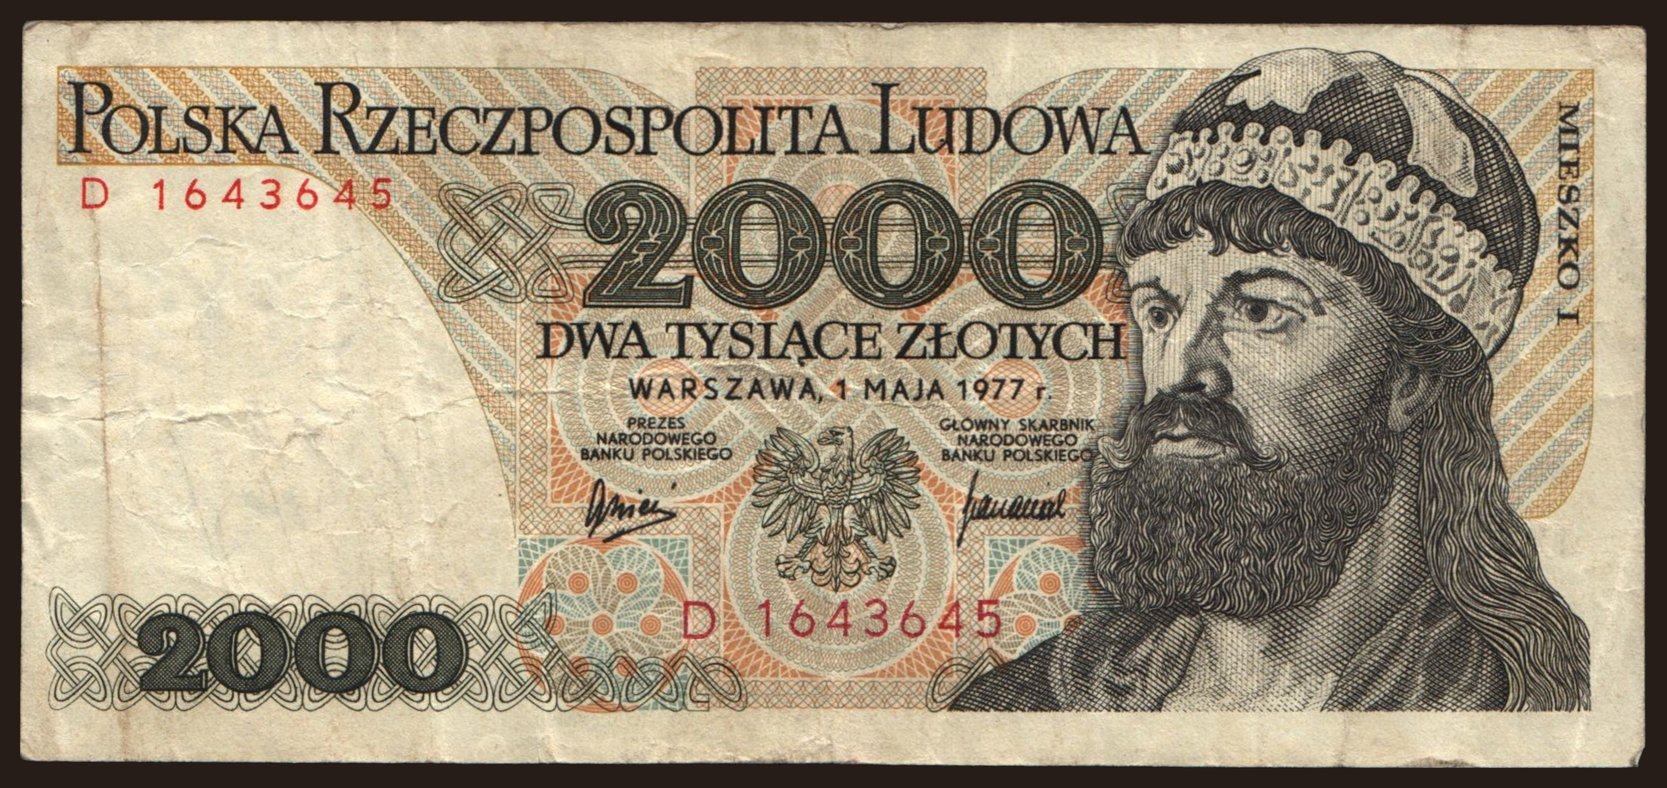 2000 zlotych, 1977